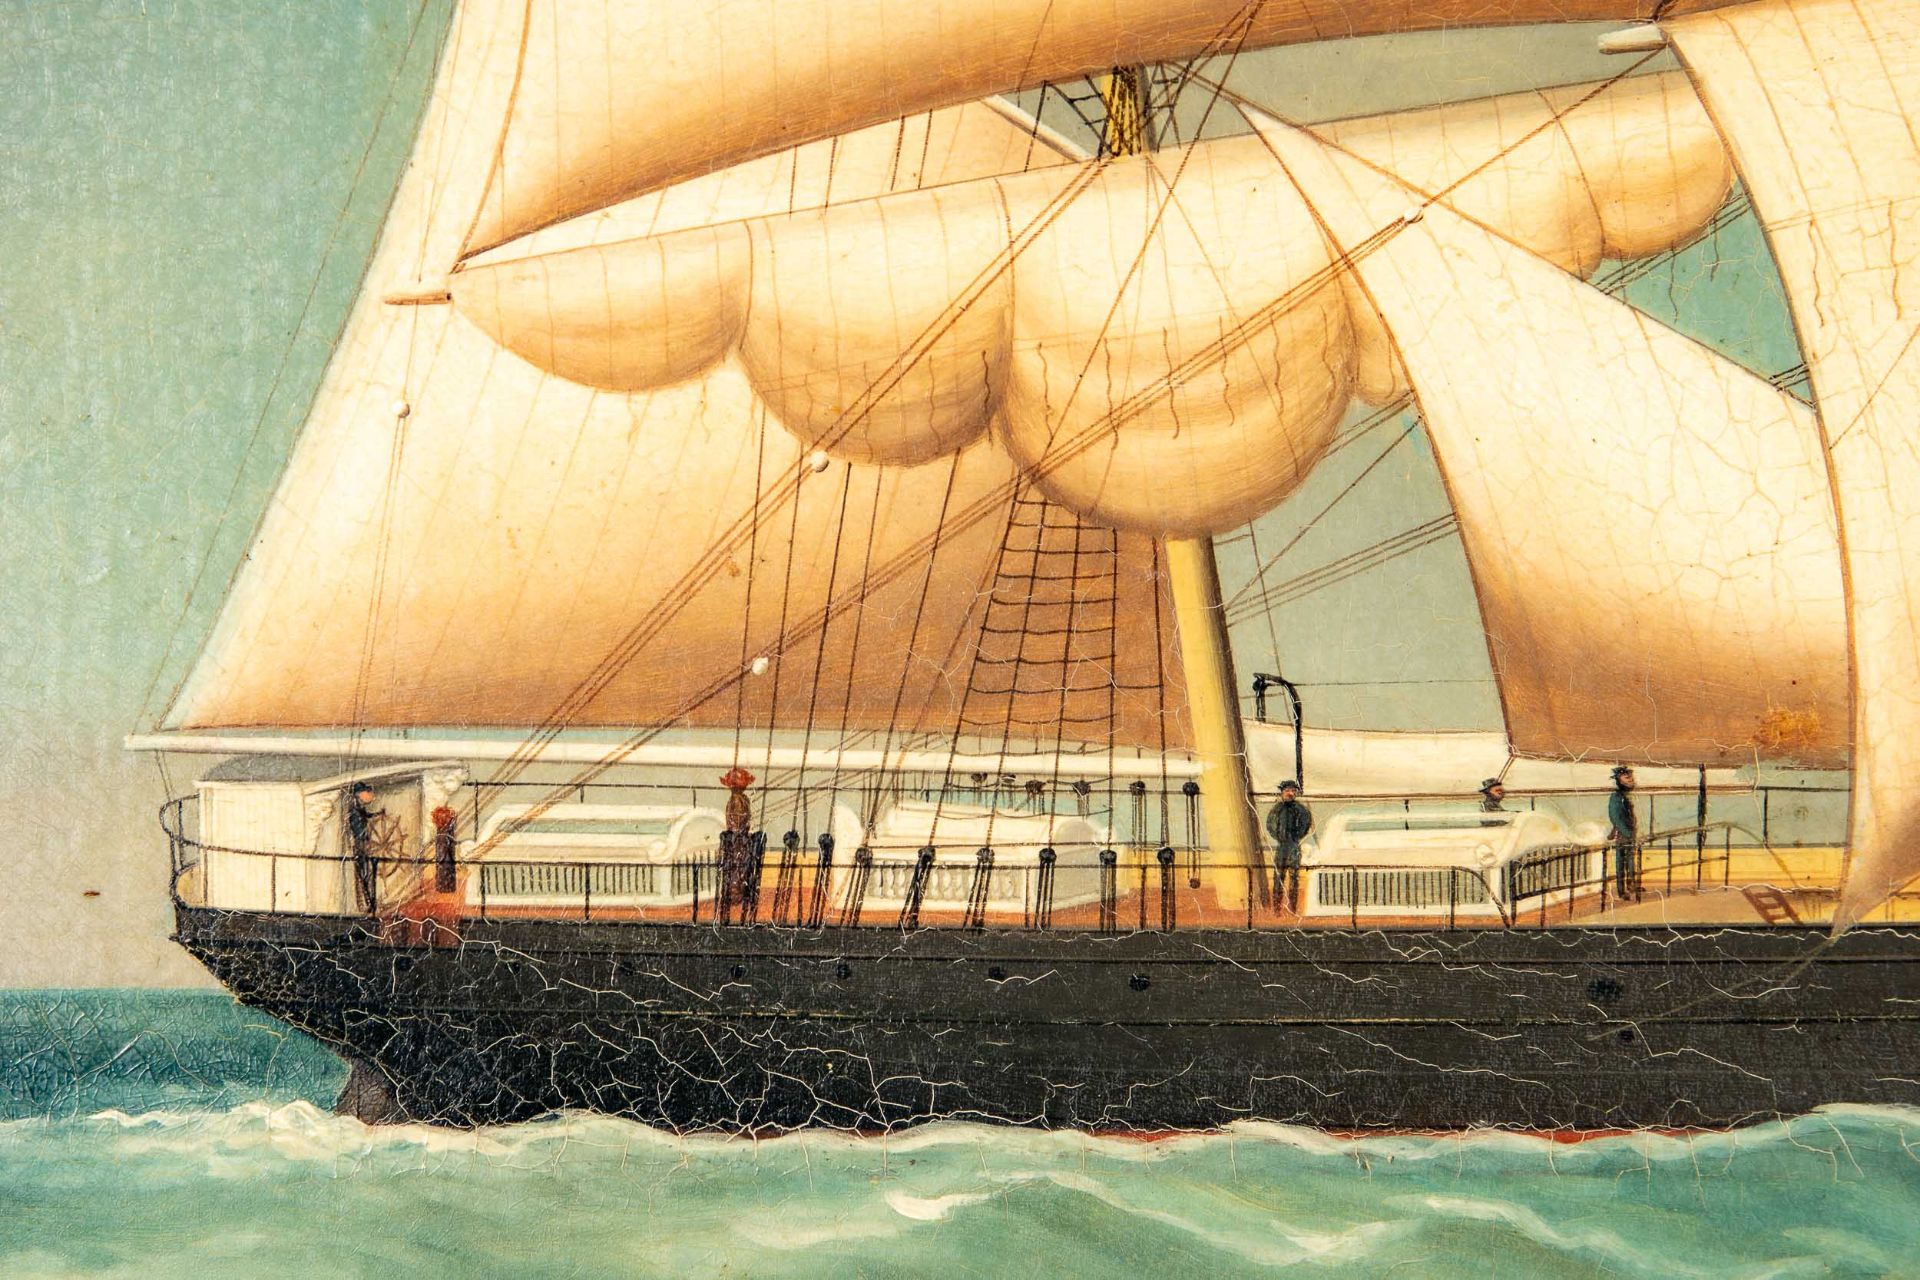 Kapitänsbild des Vollschiffes "Industrie" (1872 in Holland gebaut), qualitativ hochwertiges Gemälde - Image 4 of 24